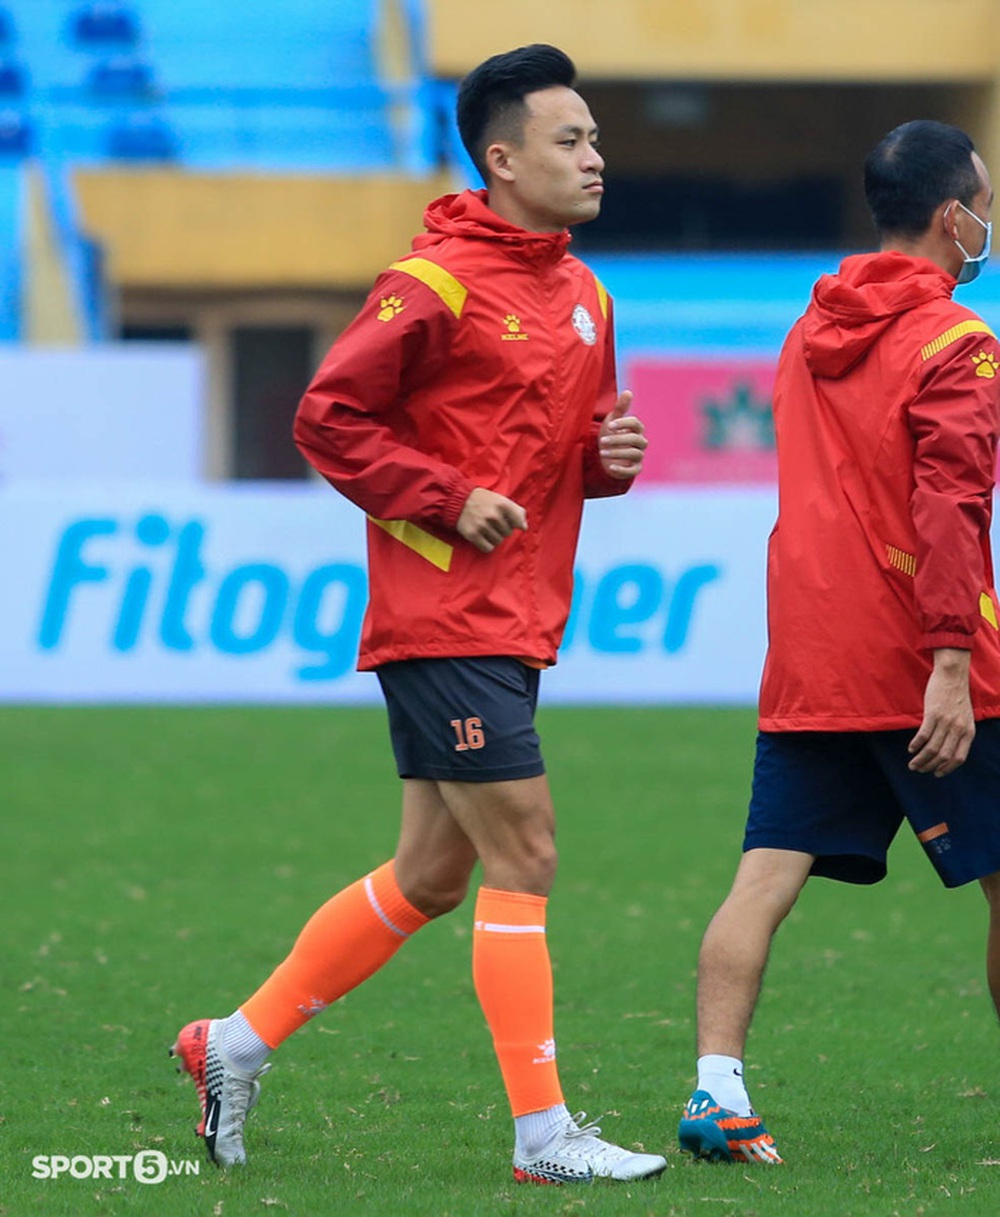 Võ Huy Toàn chấn thương, Bùi Tiến Dũng bỏ ngỏ cơ hội bắt chính trận đấu với Hà Nội FC - Ảnh 8.